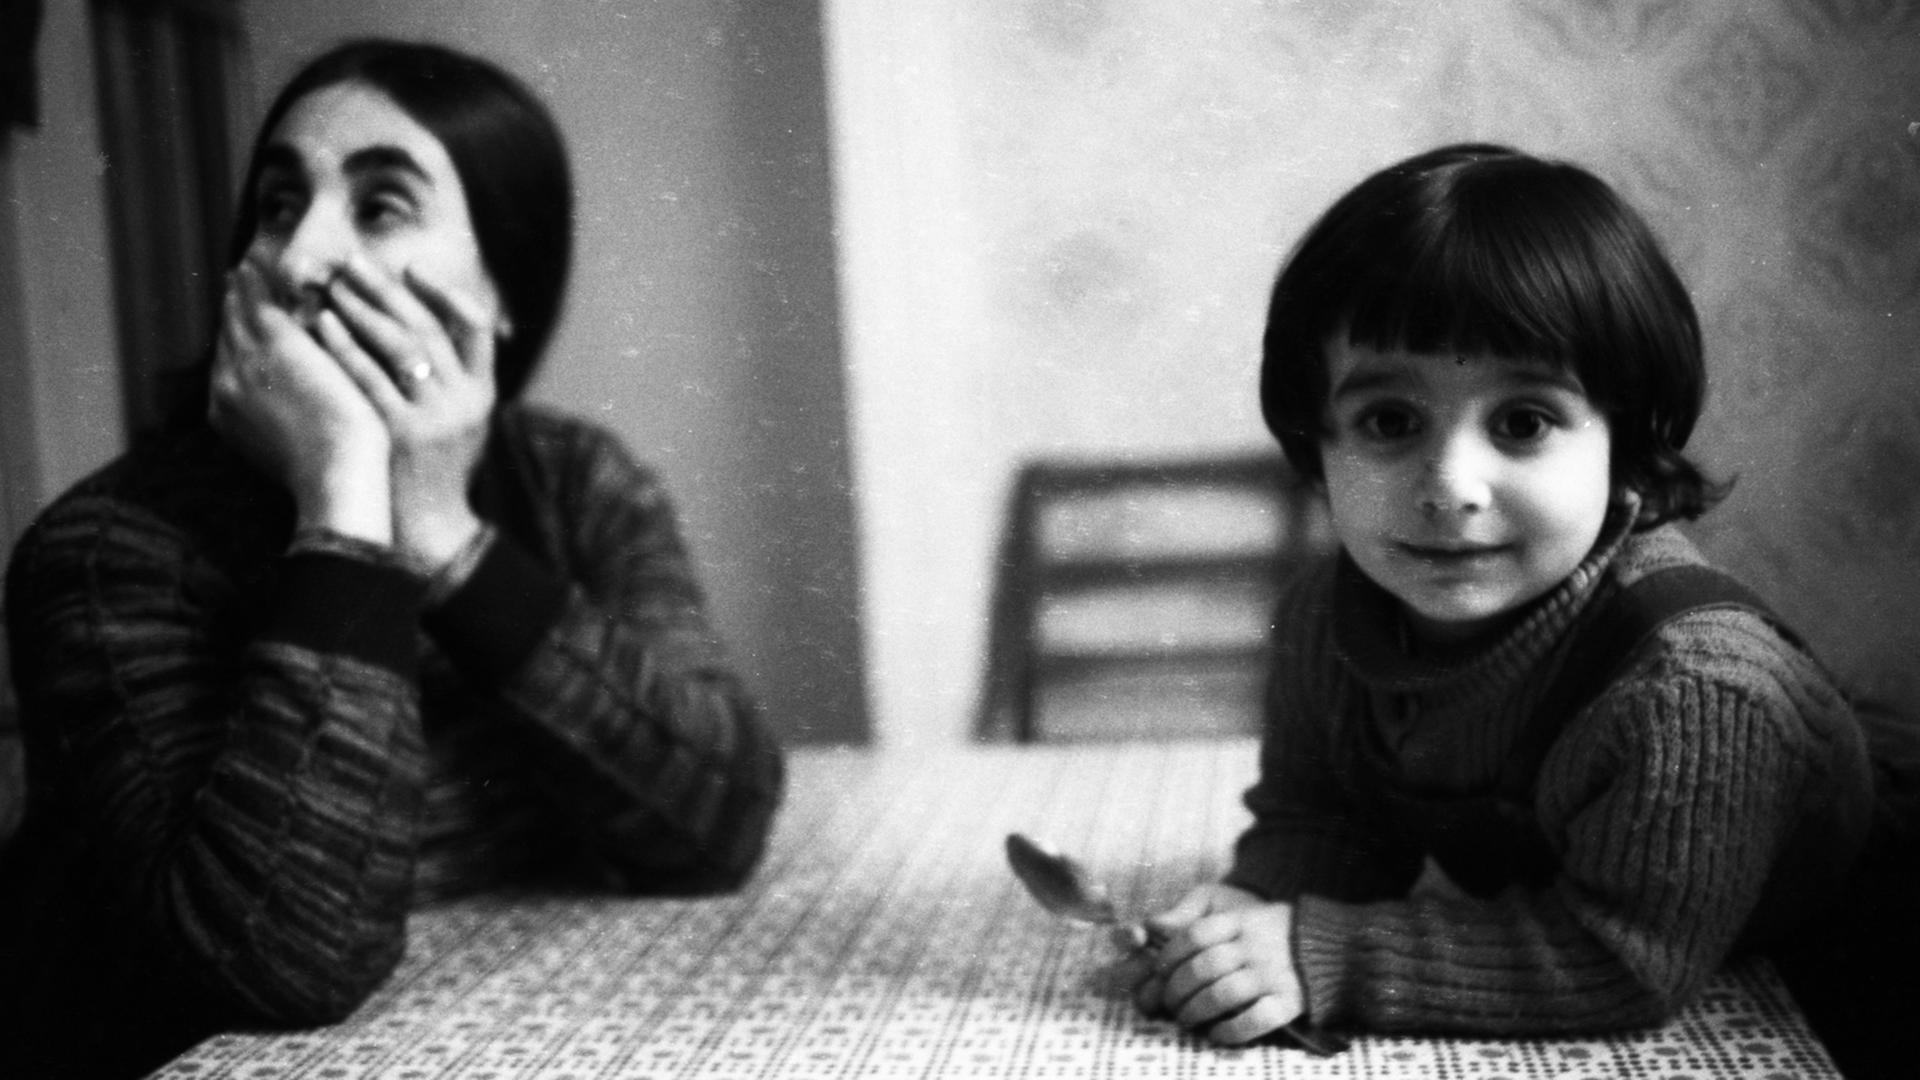 Alltag in einer türkischen Familie 1979 in Duisburg